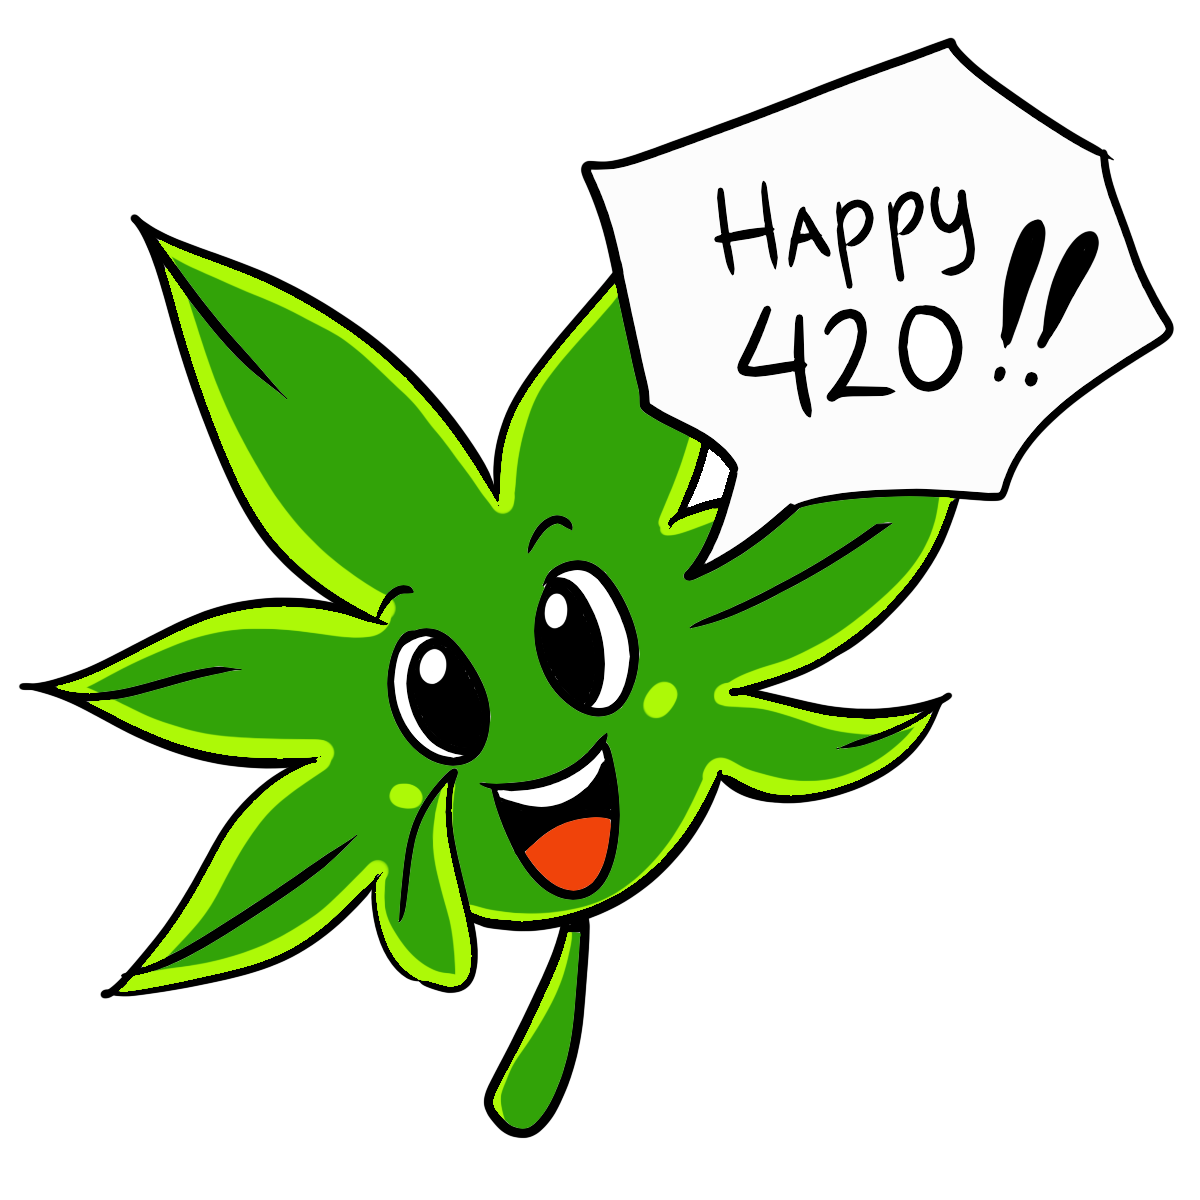 Happy 420 - Steemit.